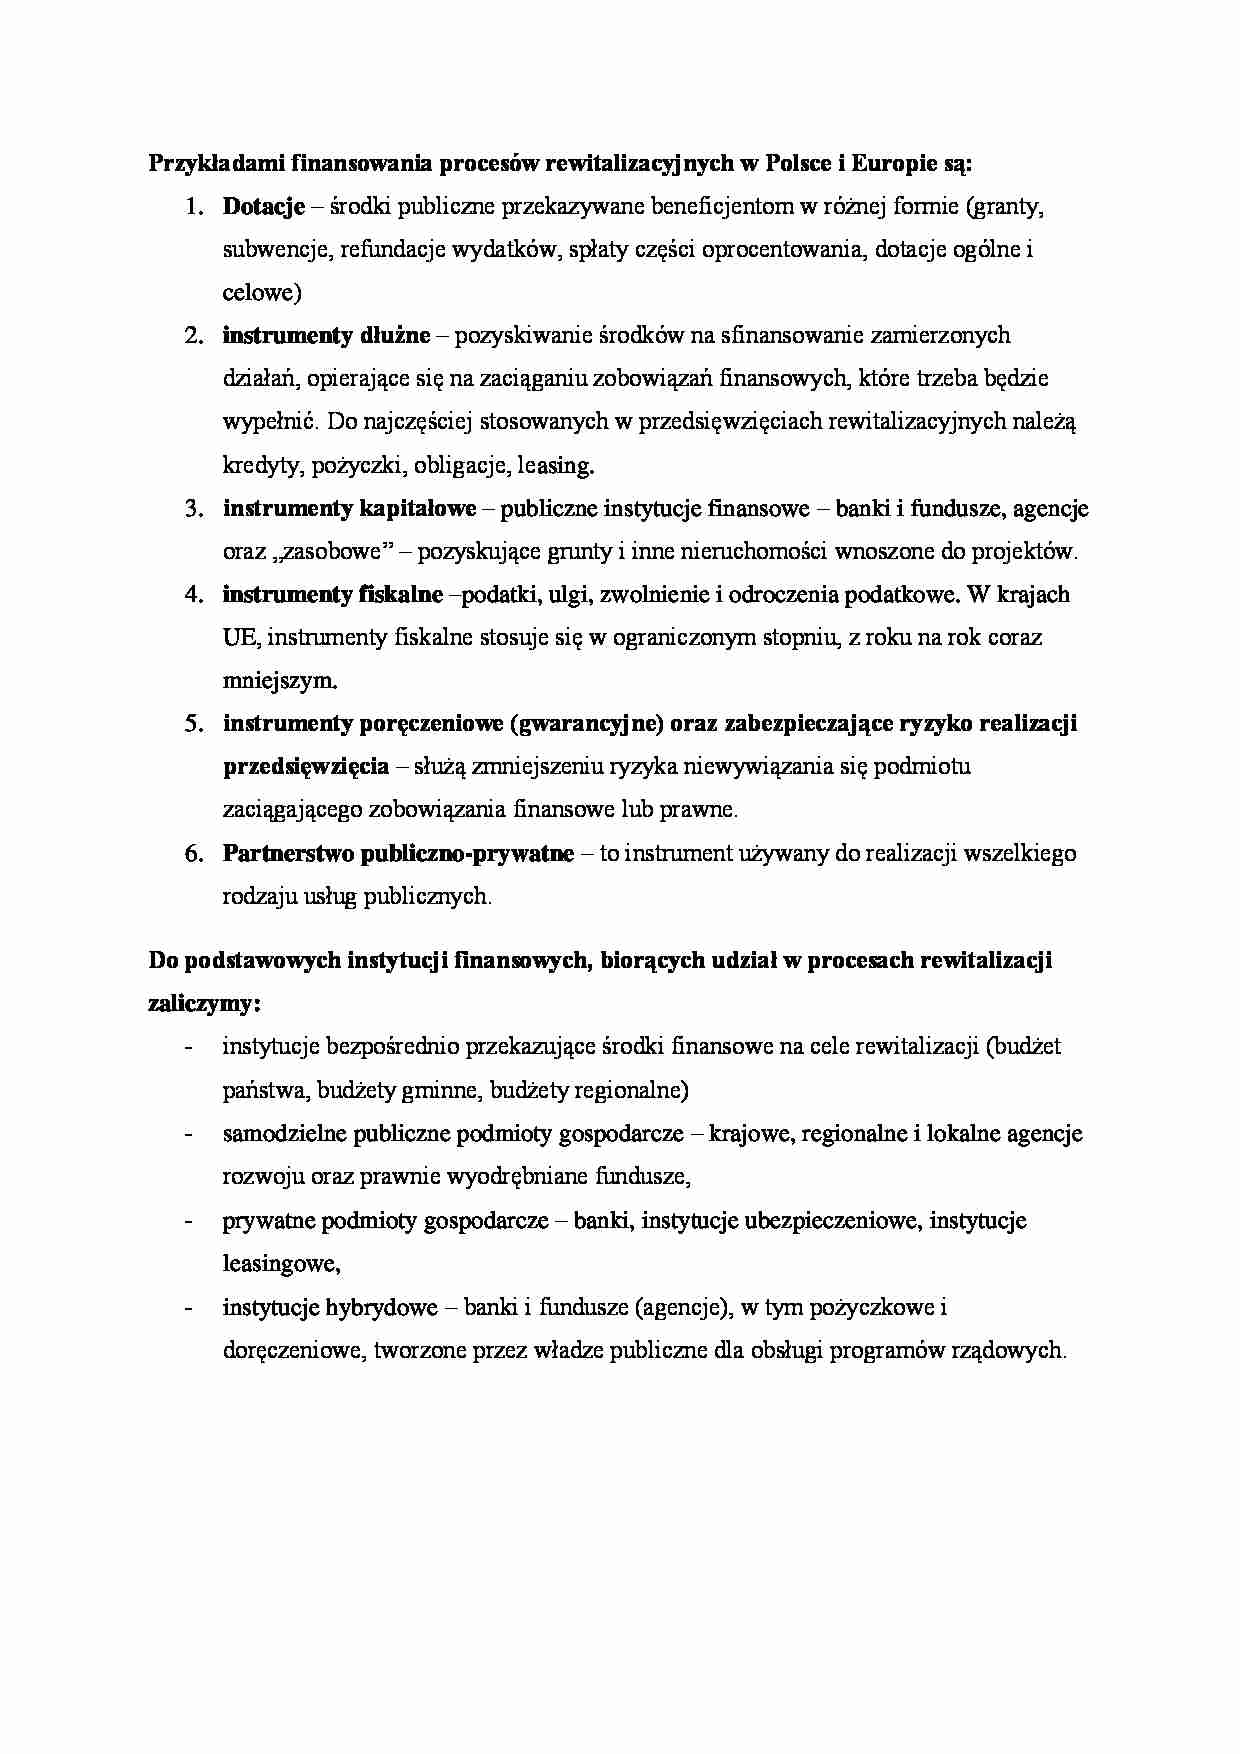 Przykłady finansowania procesów rewitalizacyjnych w Polsce i Europie - strona 1